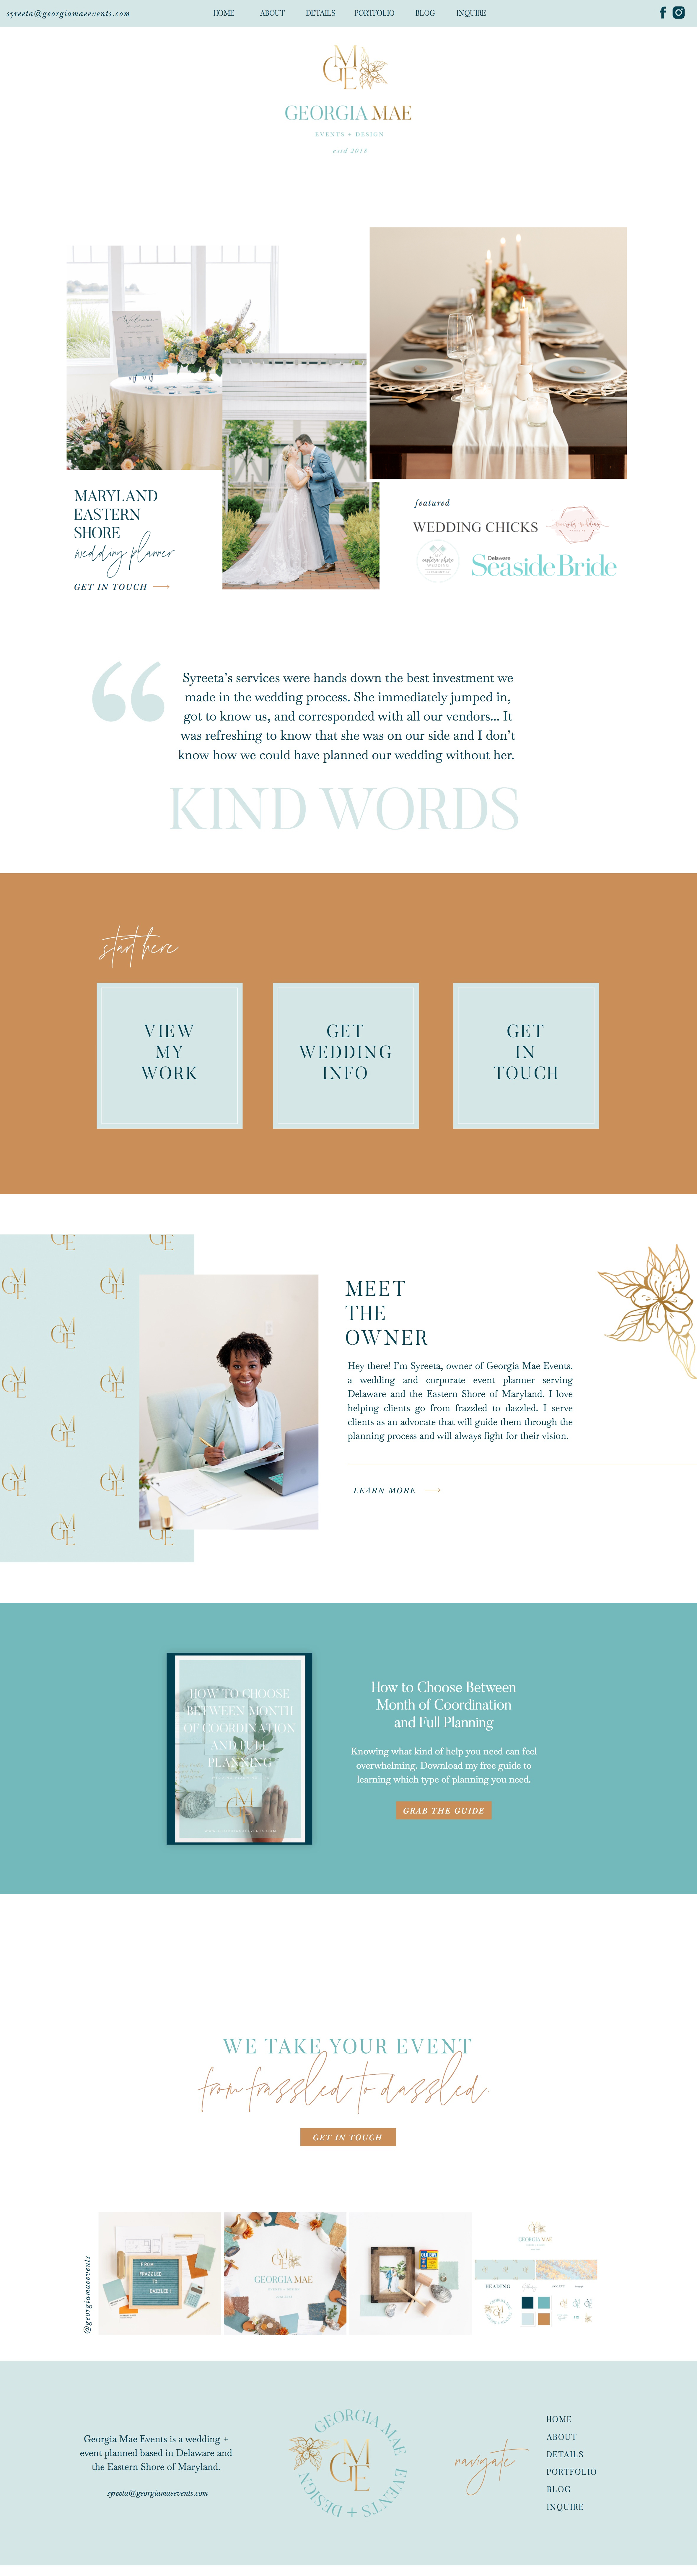 showit website / showit web designer / branding for creatives and wedding businesses